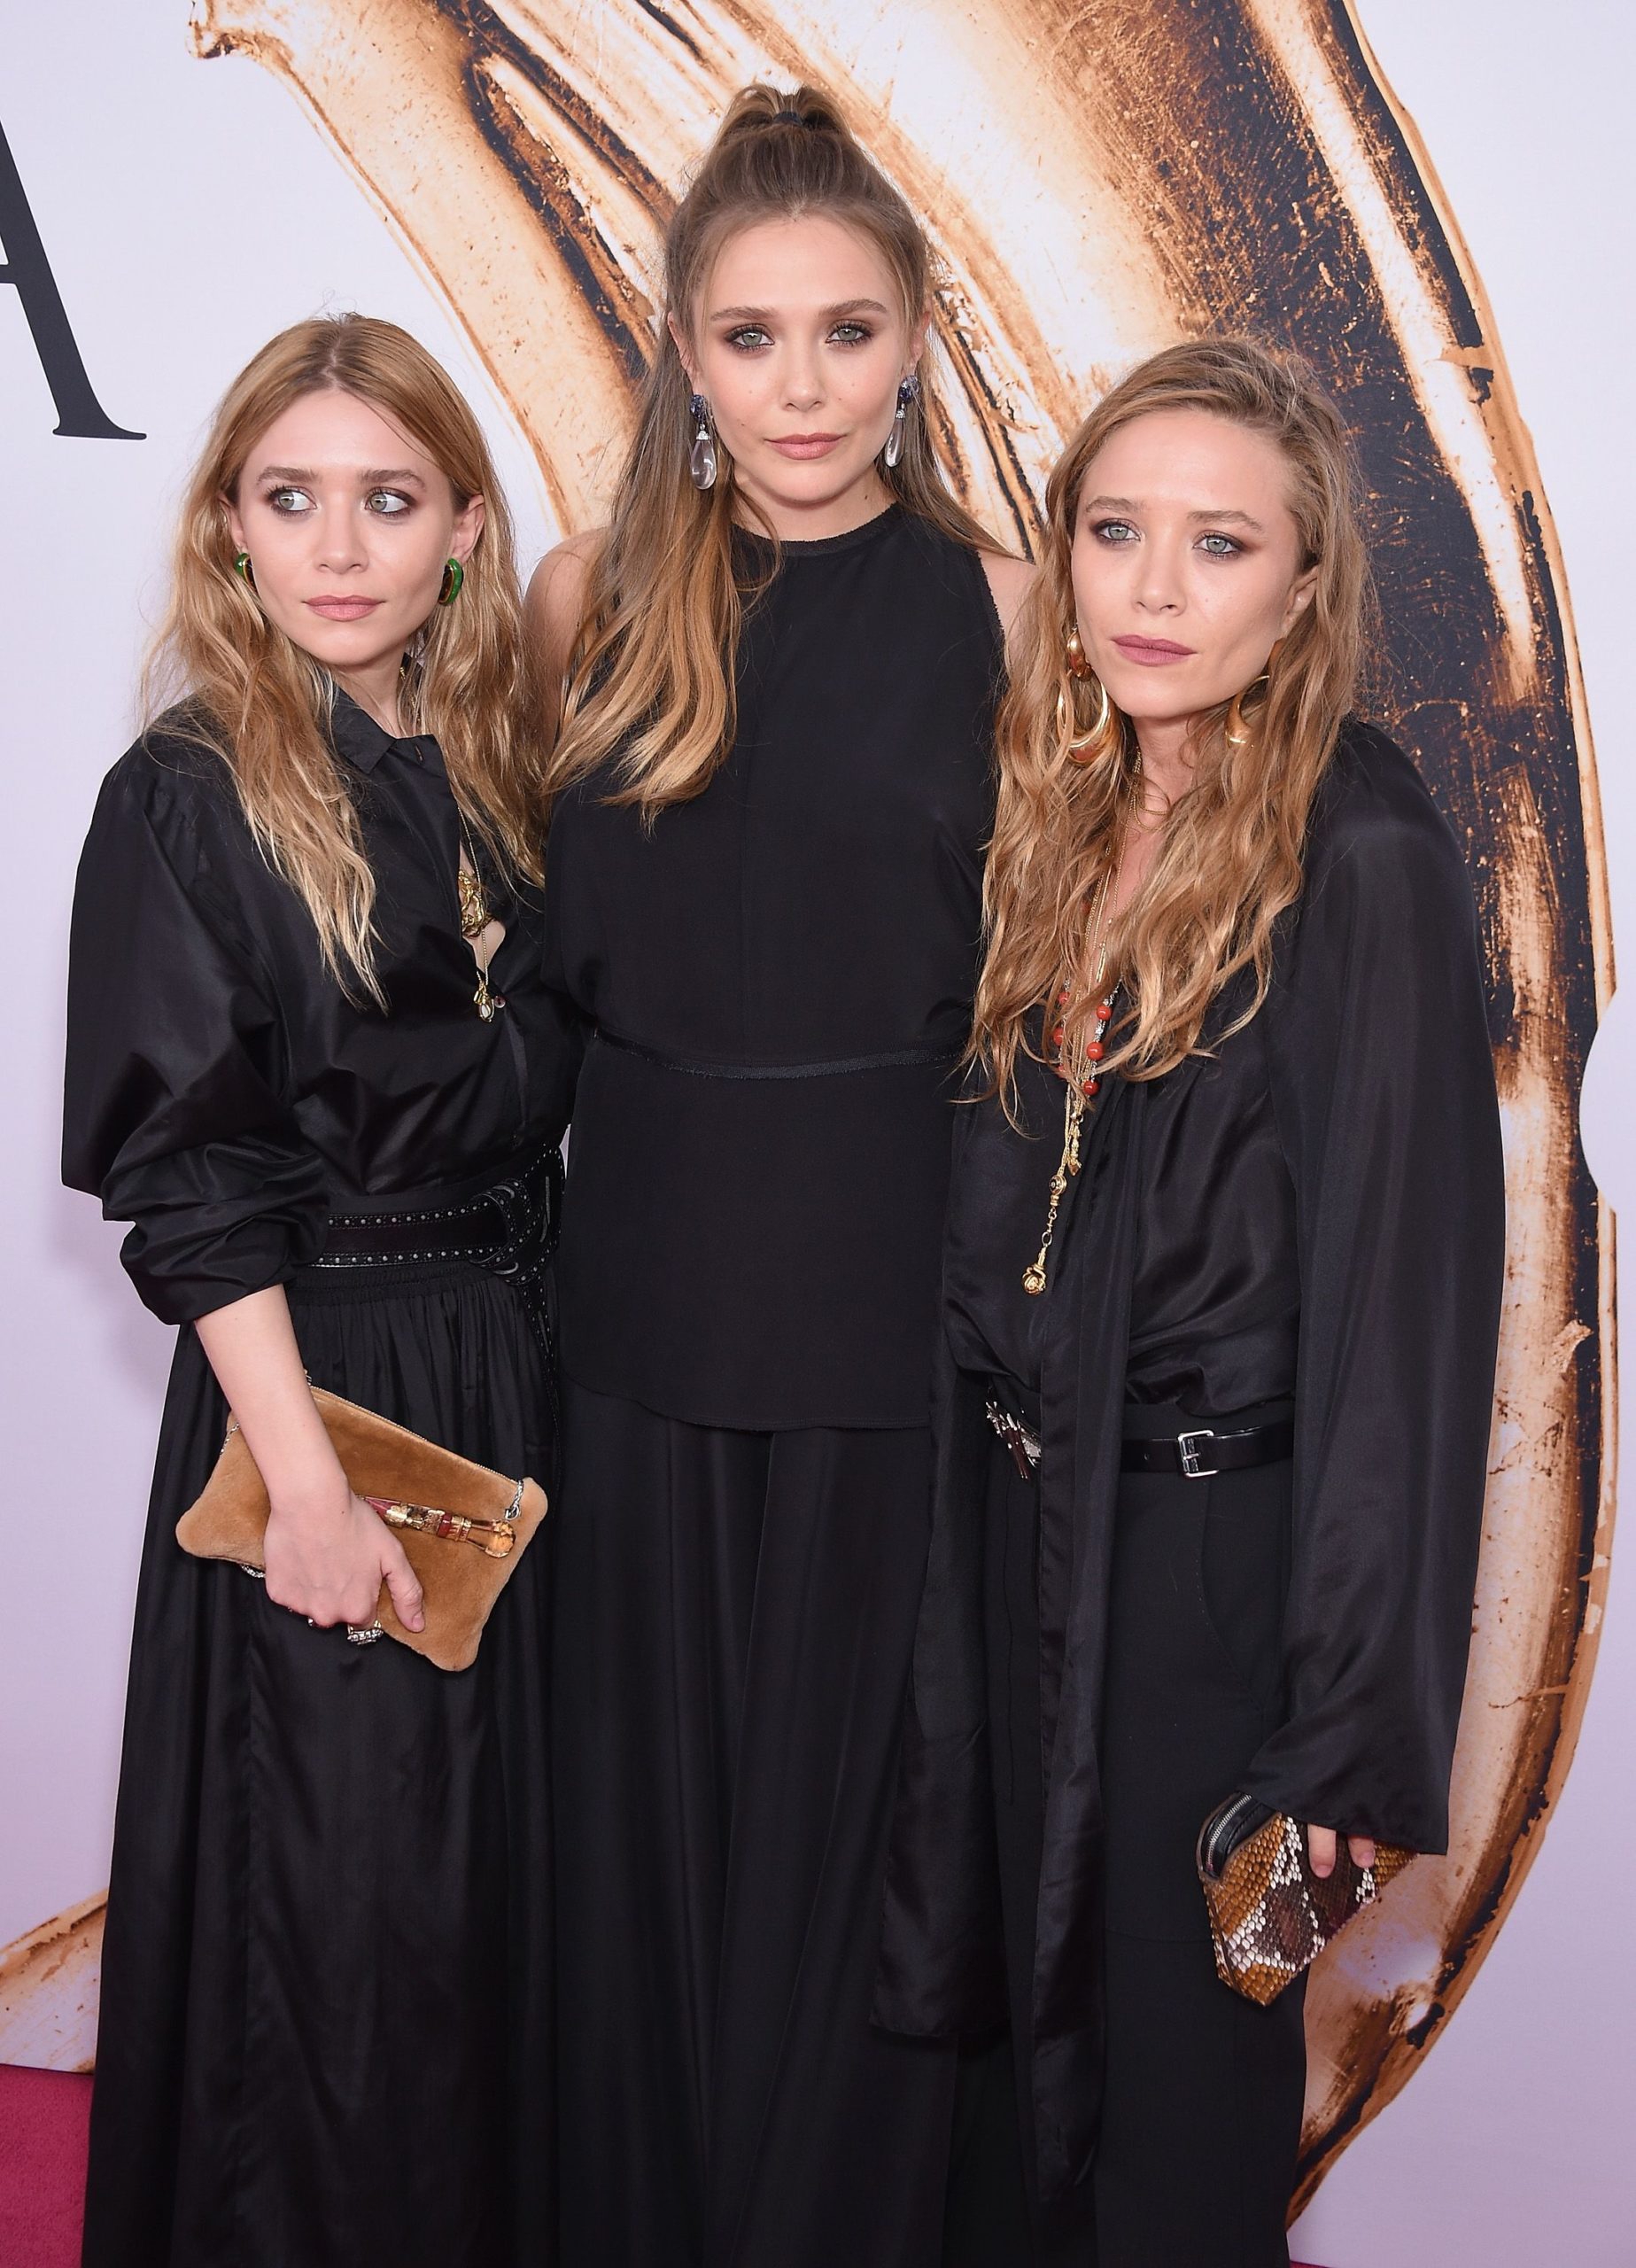 Elizabeth Olsen Dress Designed by Her Sisters In Emmy Awards 2021 Making Fans go Wild!